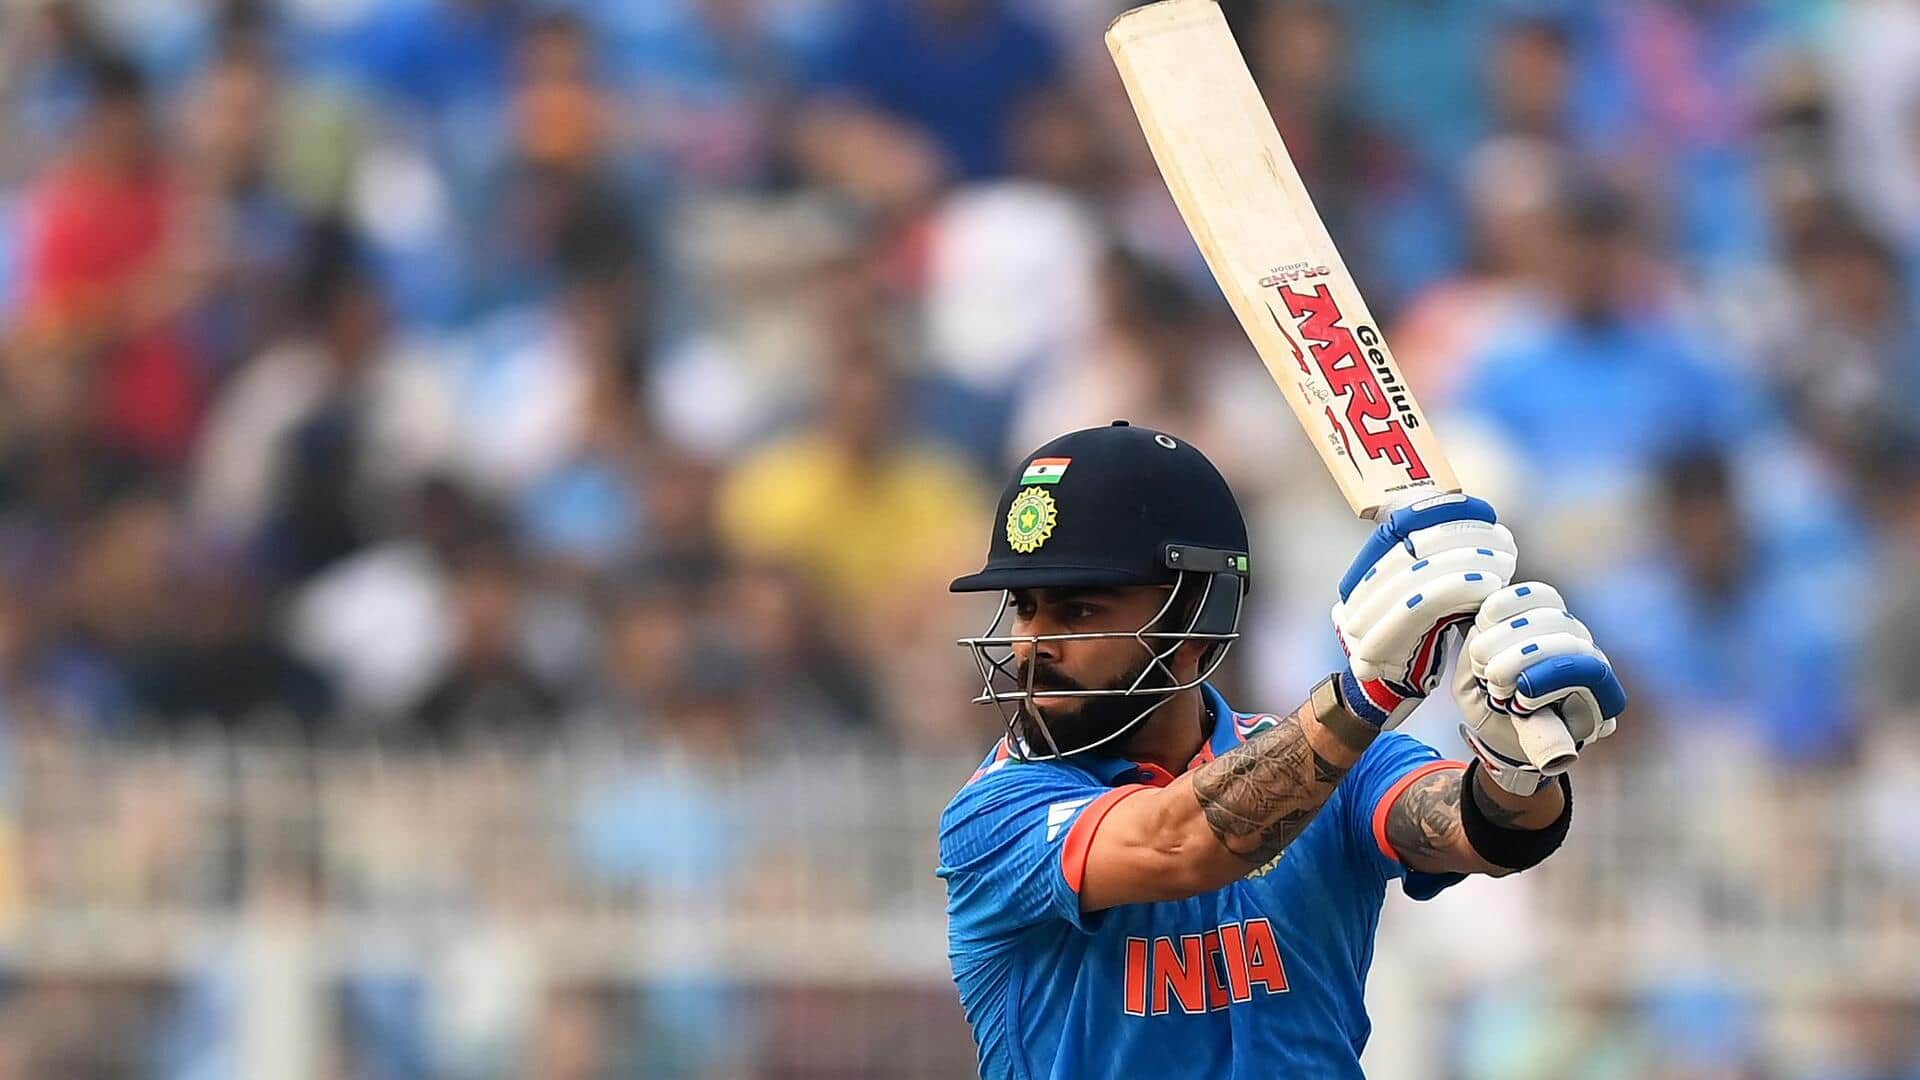 Nations against whom Virat Kohli owns 1,500-plus ODI runs: Stats